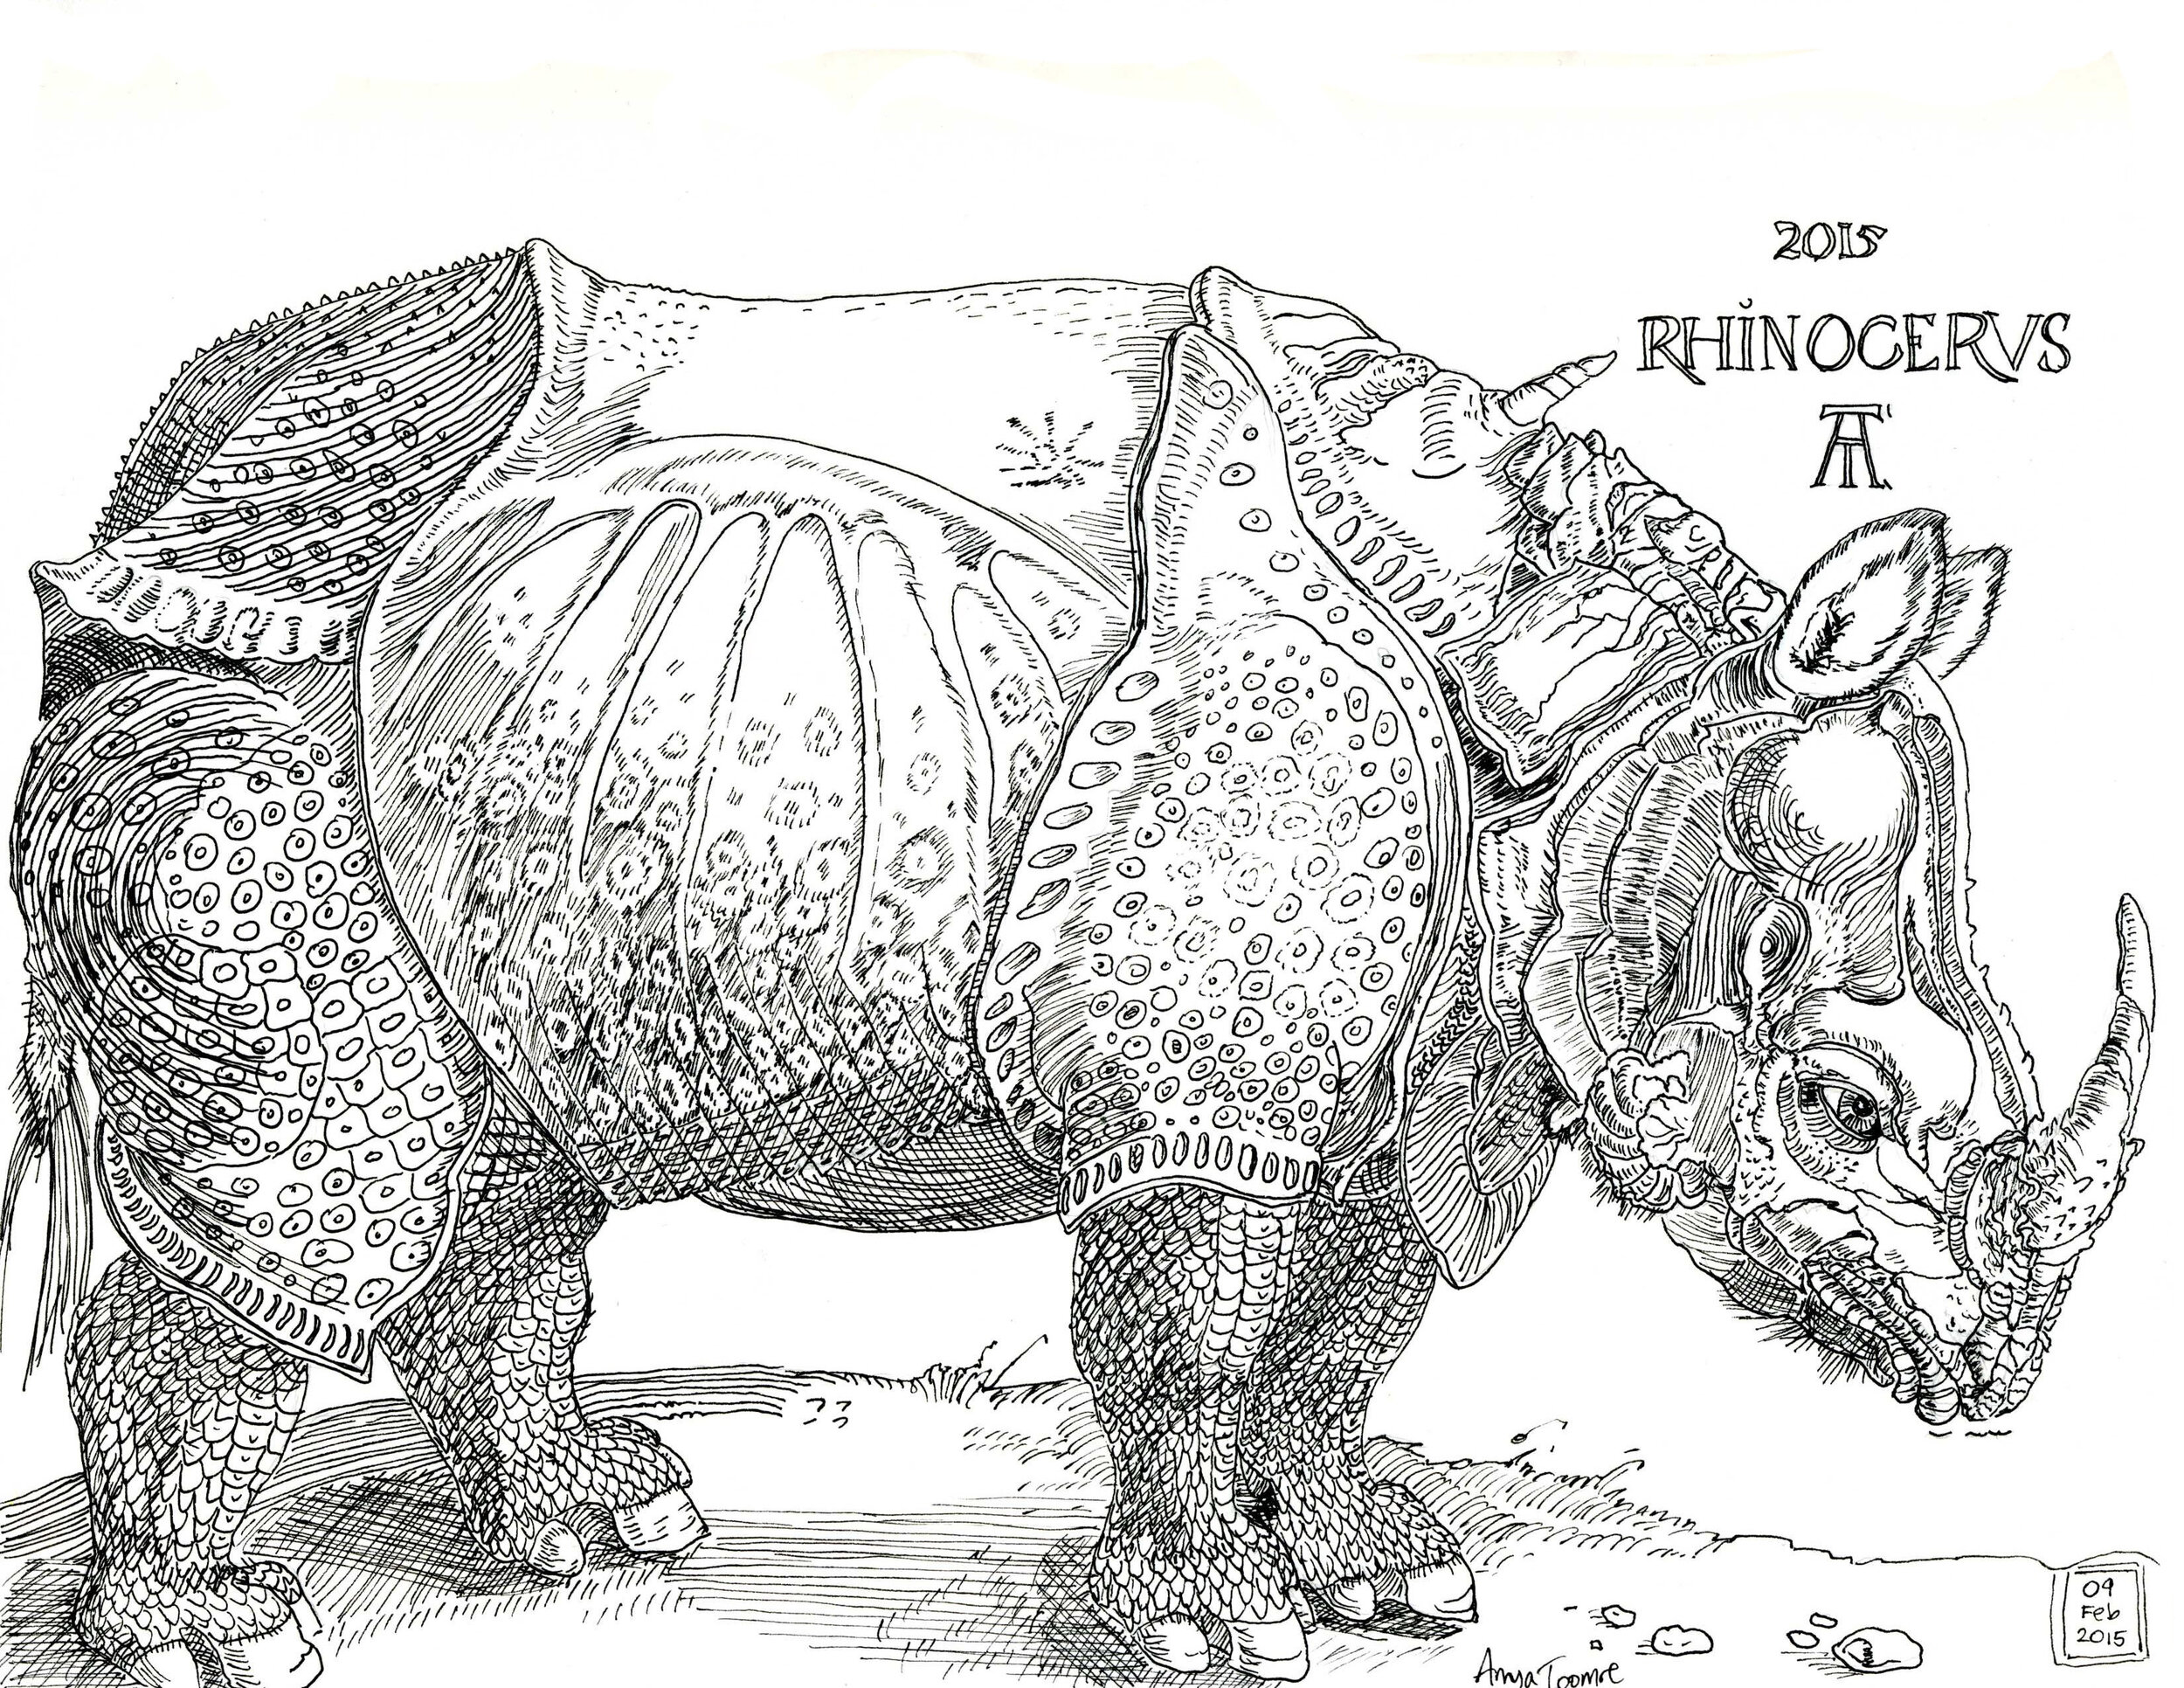 My Version of Dürer's Rhinoceros